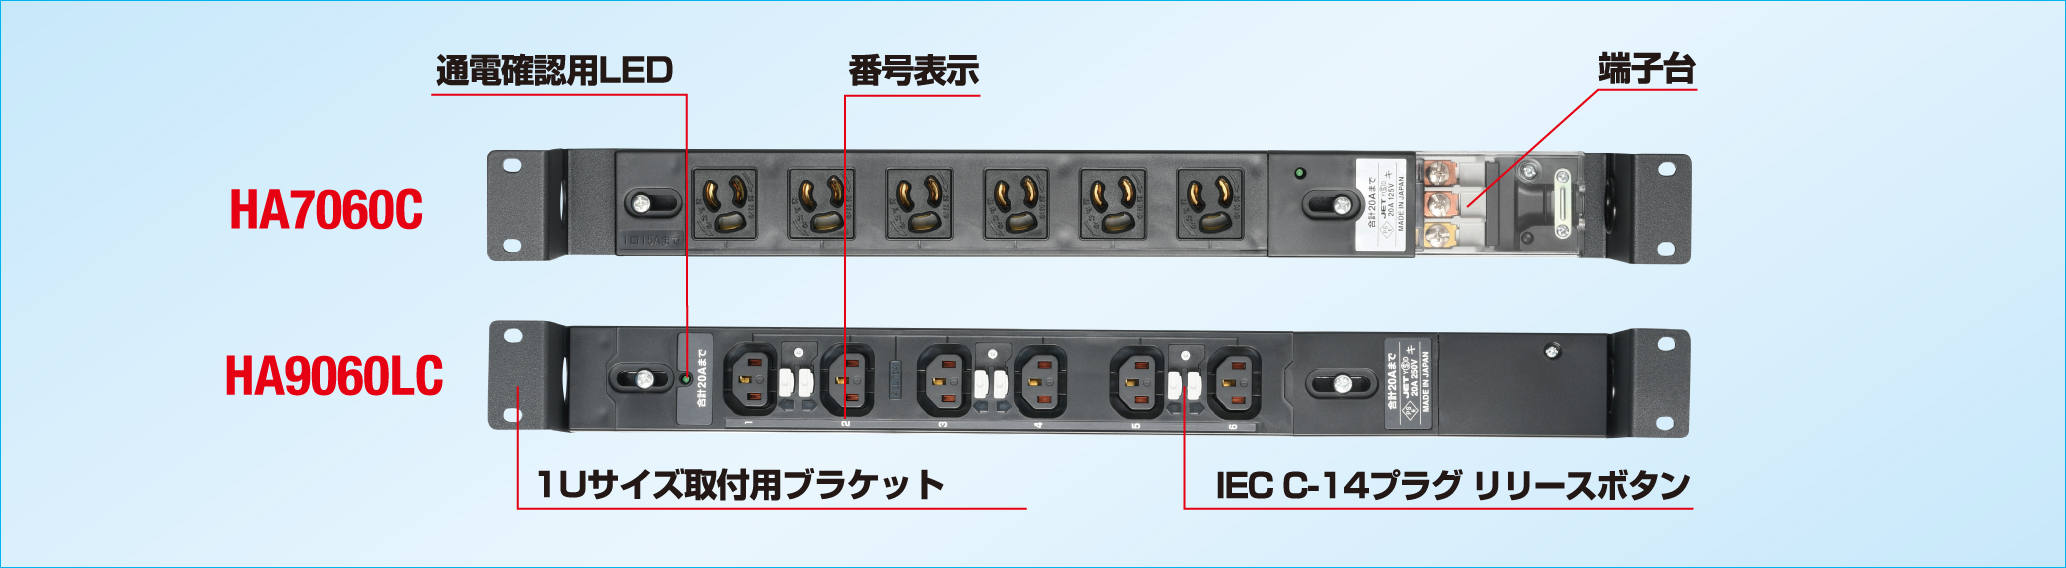 アメリカン電機 IEC形コンセントバー8個口 HA9080S